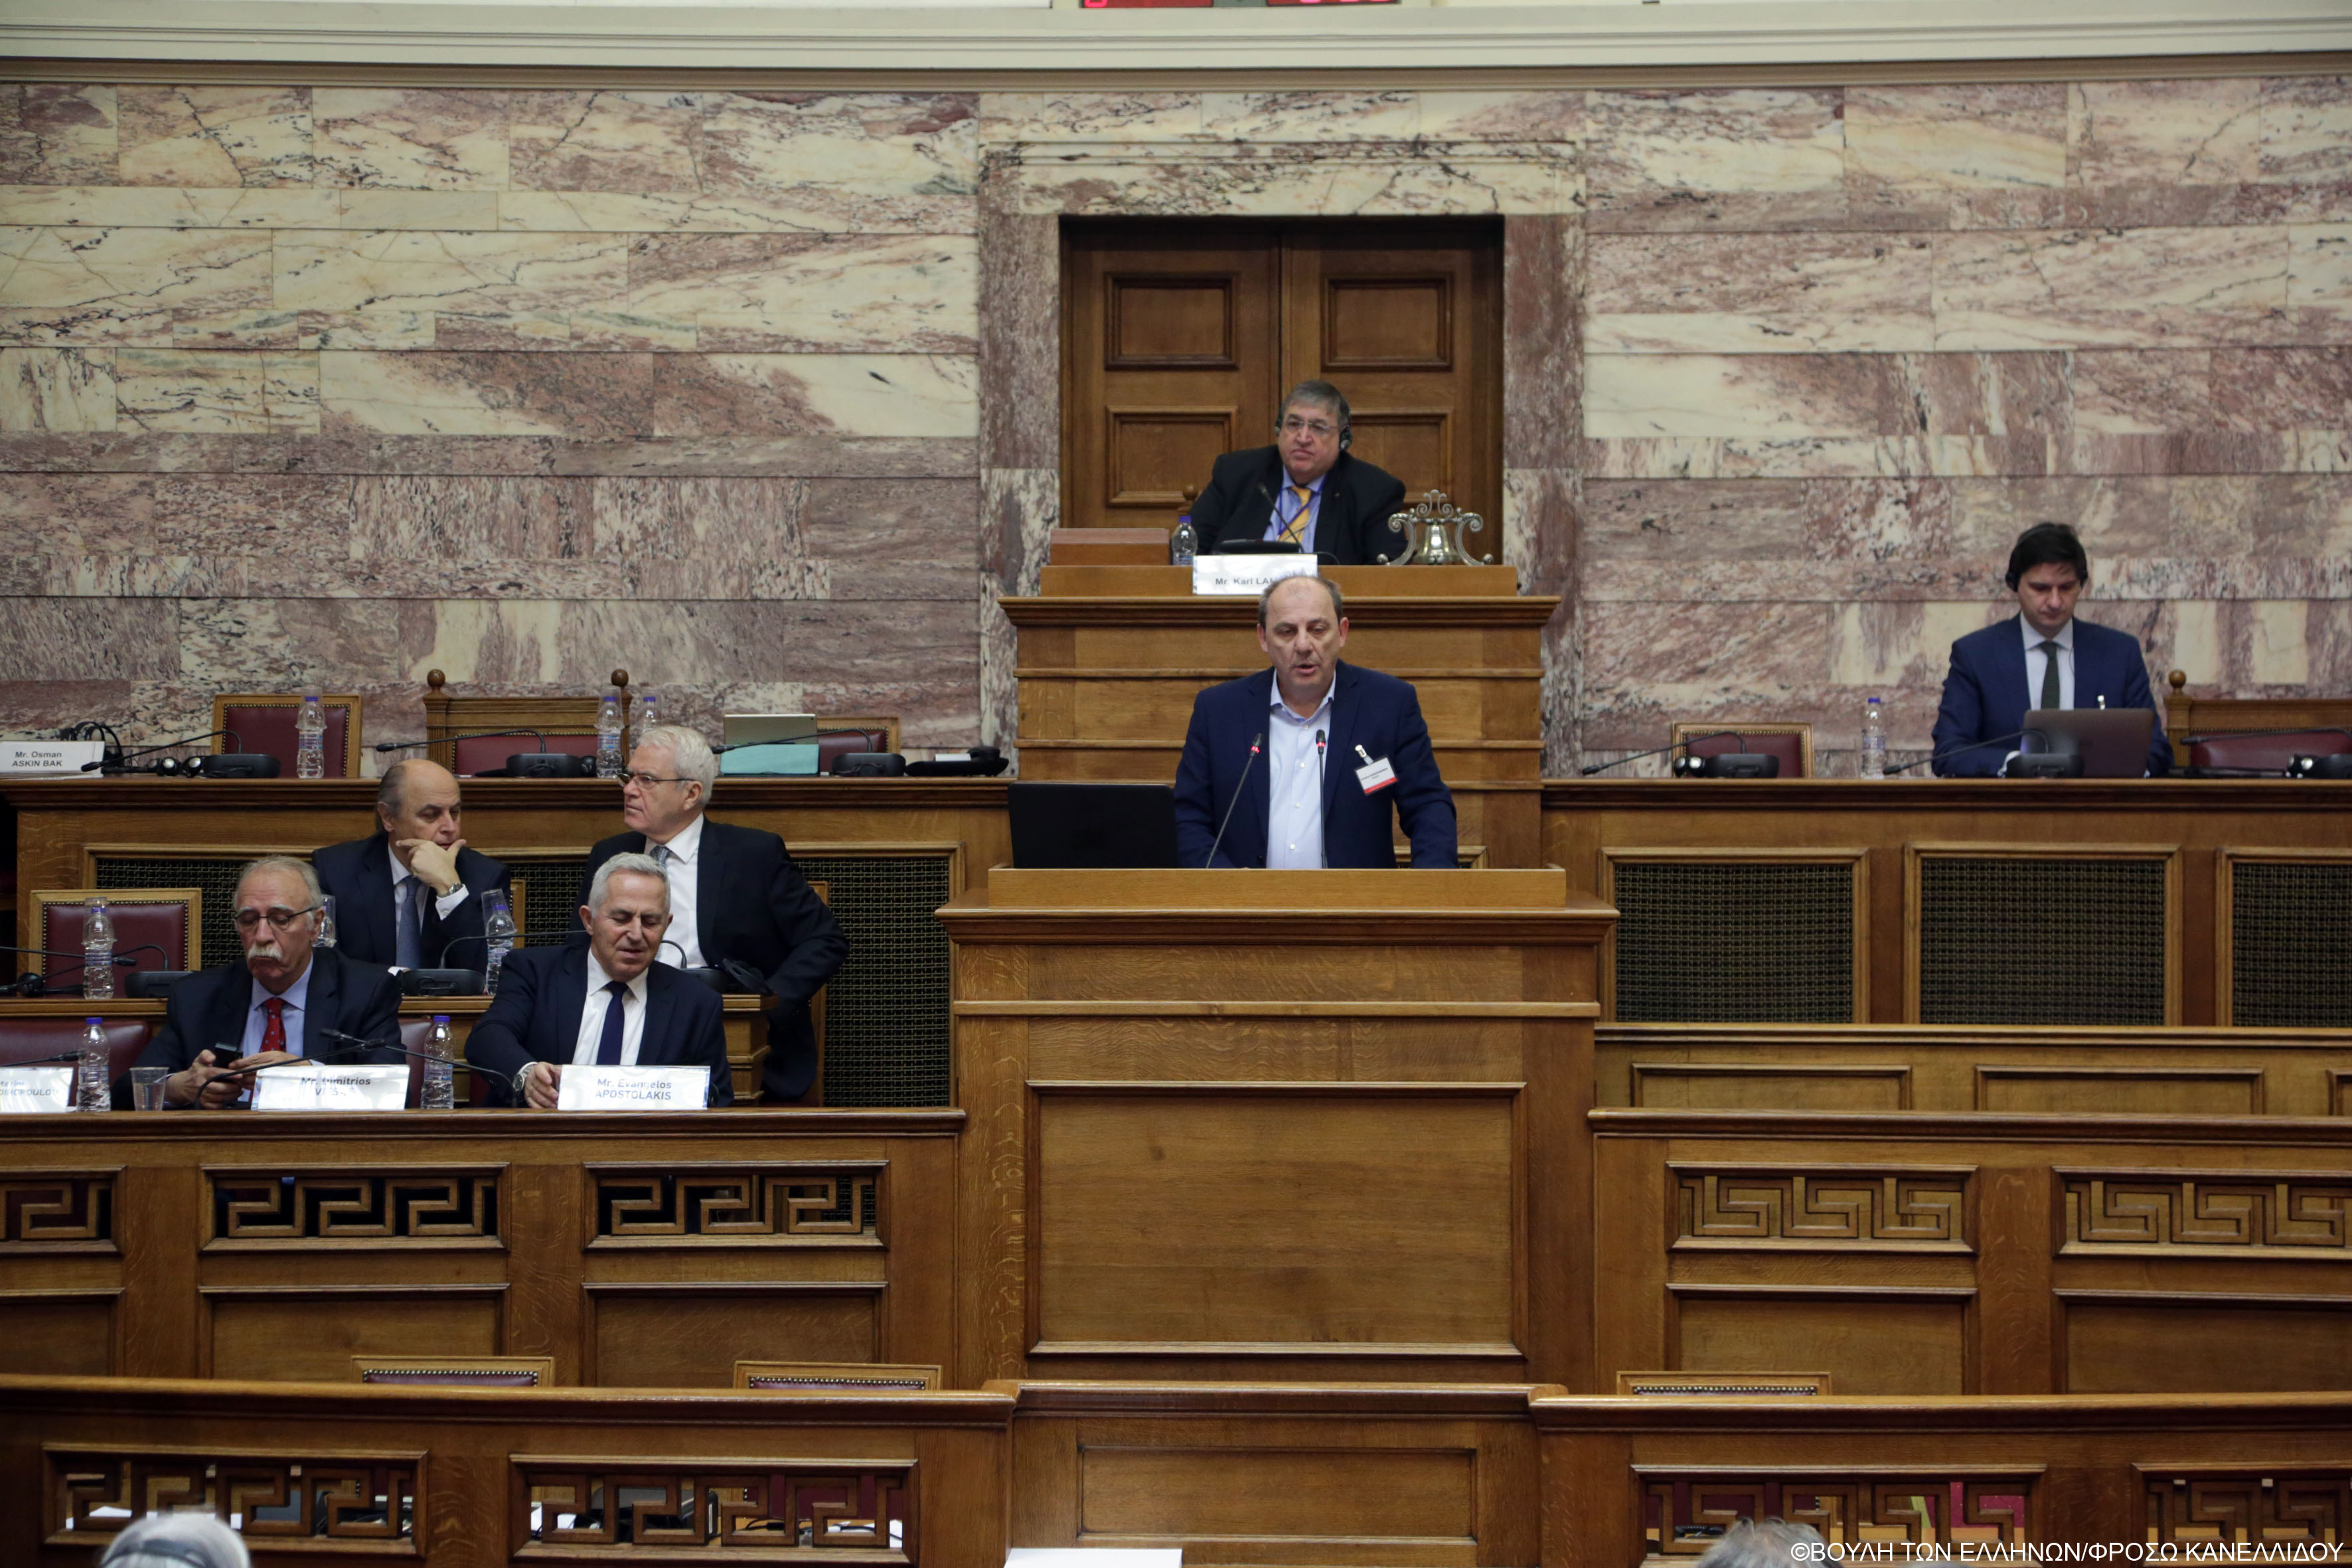 Χρ. Καραγιαννίδης: Κομβικός ο ρόλος της Ελλάδας ως πυλώνας σταθερότητας στη Μεσόγειο και στα Βαλκάνια